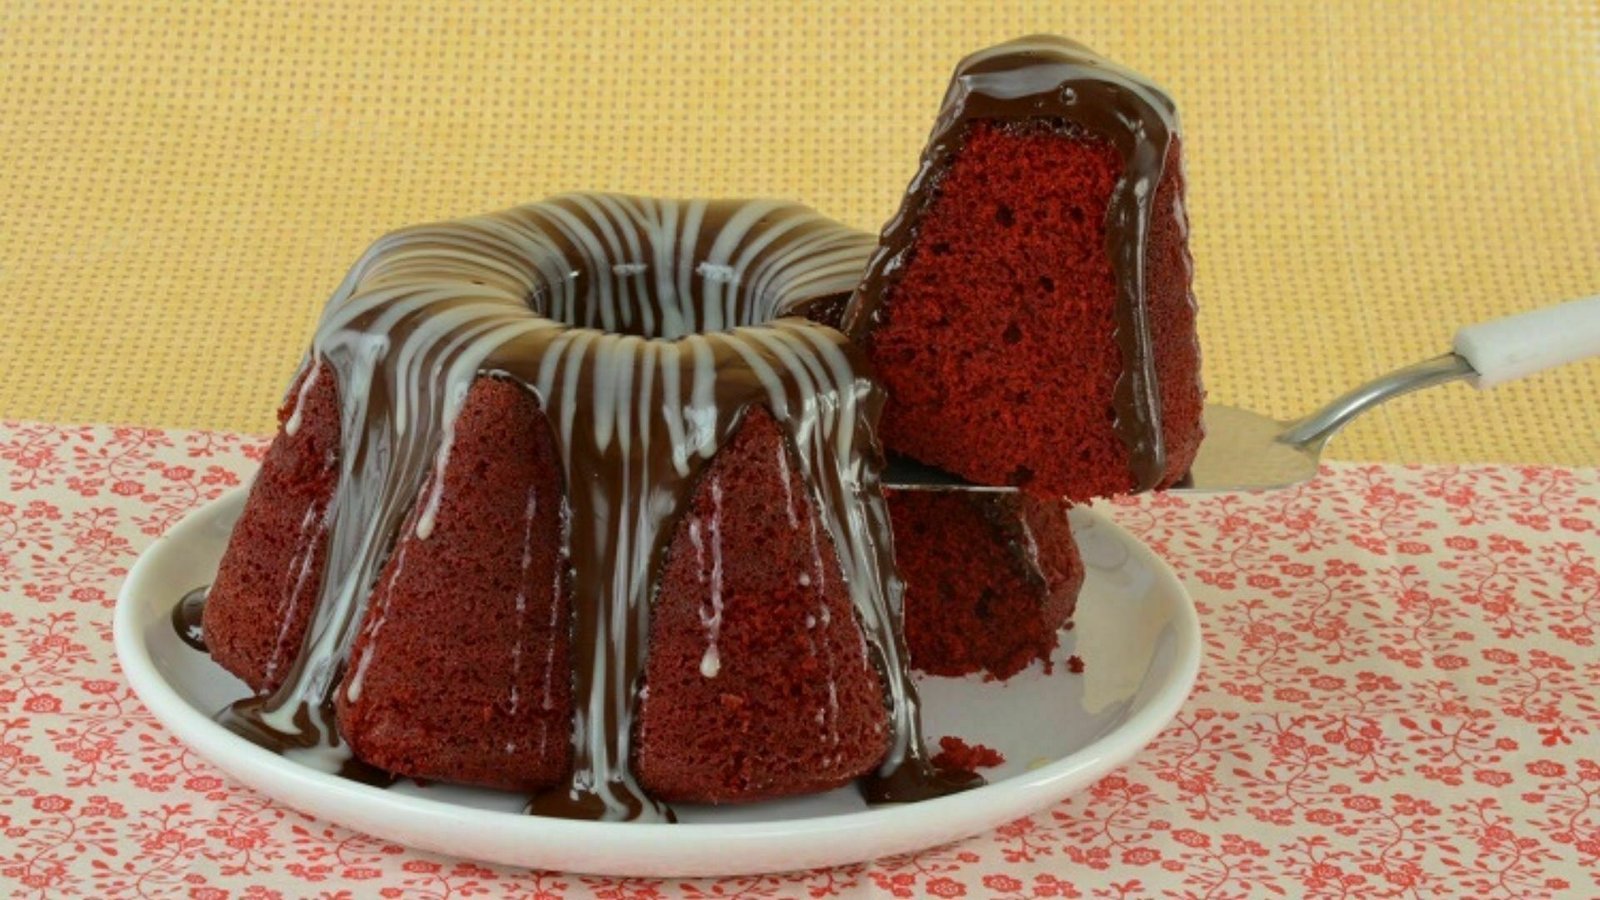 Você está visualizando atualmente Bolo red velvet com cobertura de chocolate, um dos bolos mais pedidos em casas especializadas em bolos